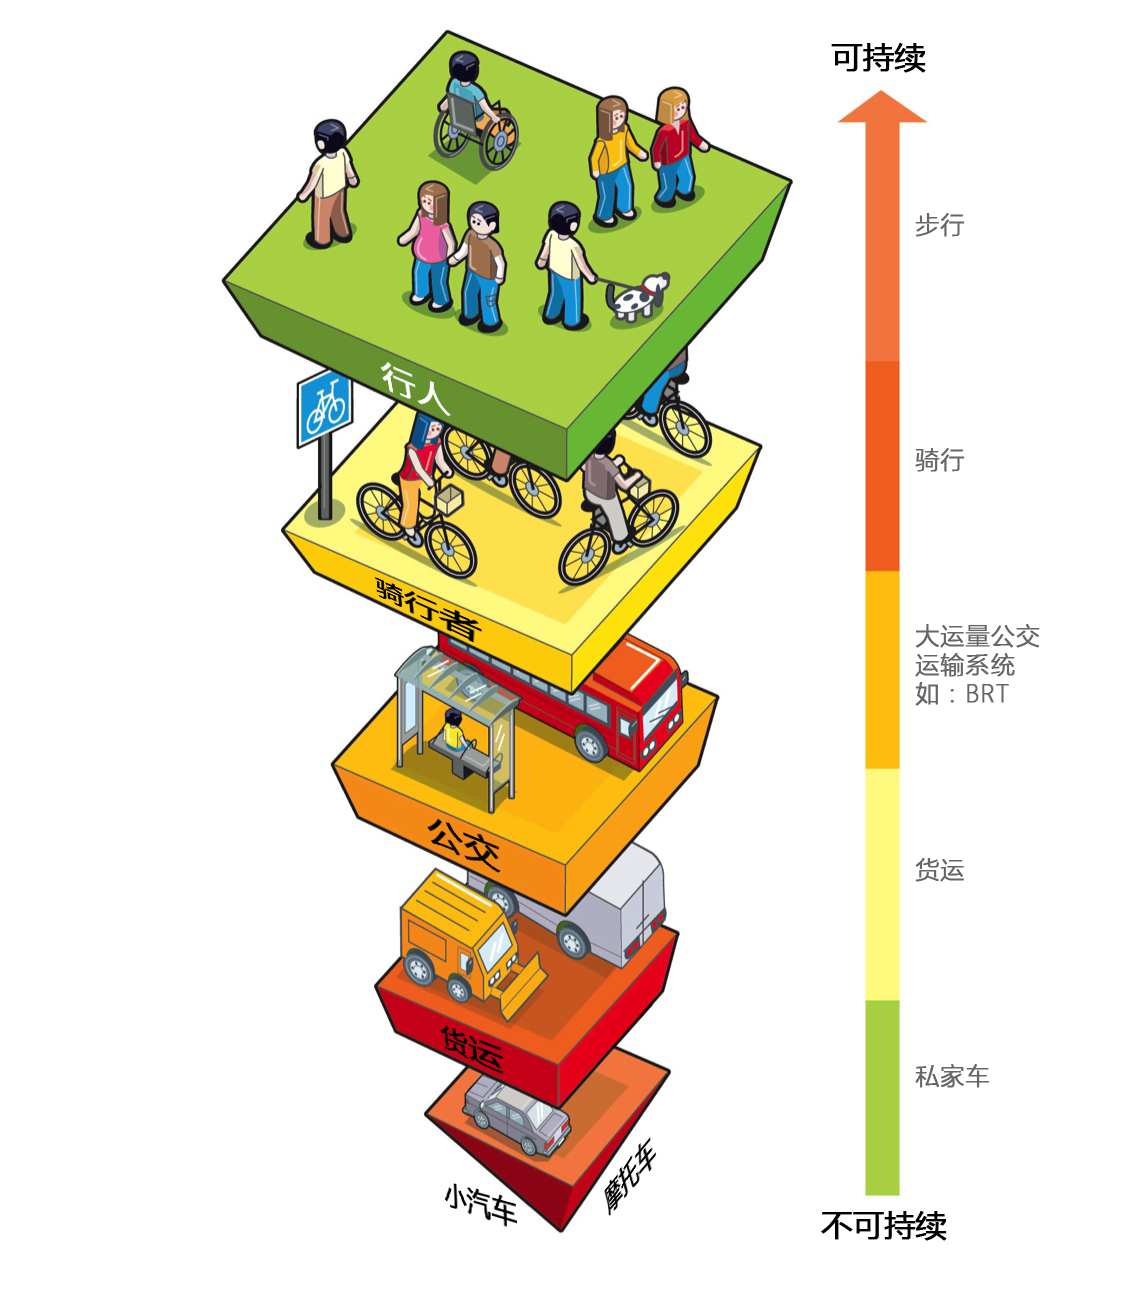 可持续发展的交通出行方式金字塔